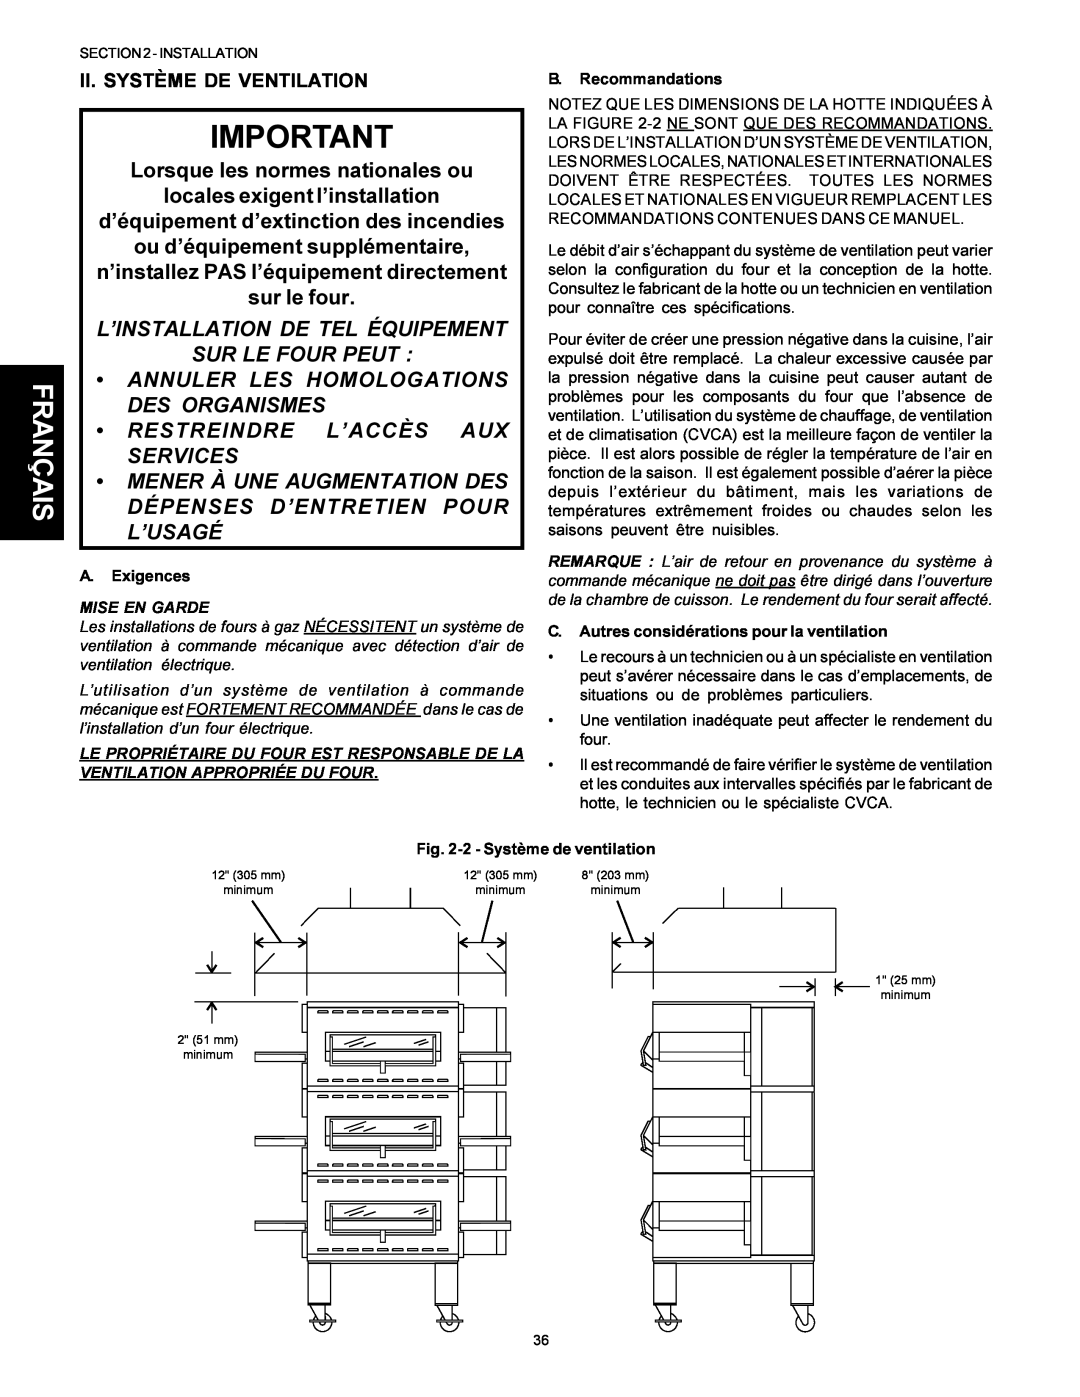 Middleby Marshall Model PS536 L’Installation De Tel Équipement Sur Le Four Peut, Annuler Les Homologations, Des Organismes 